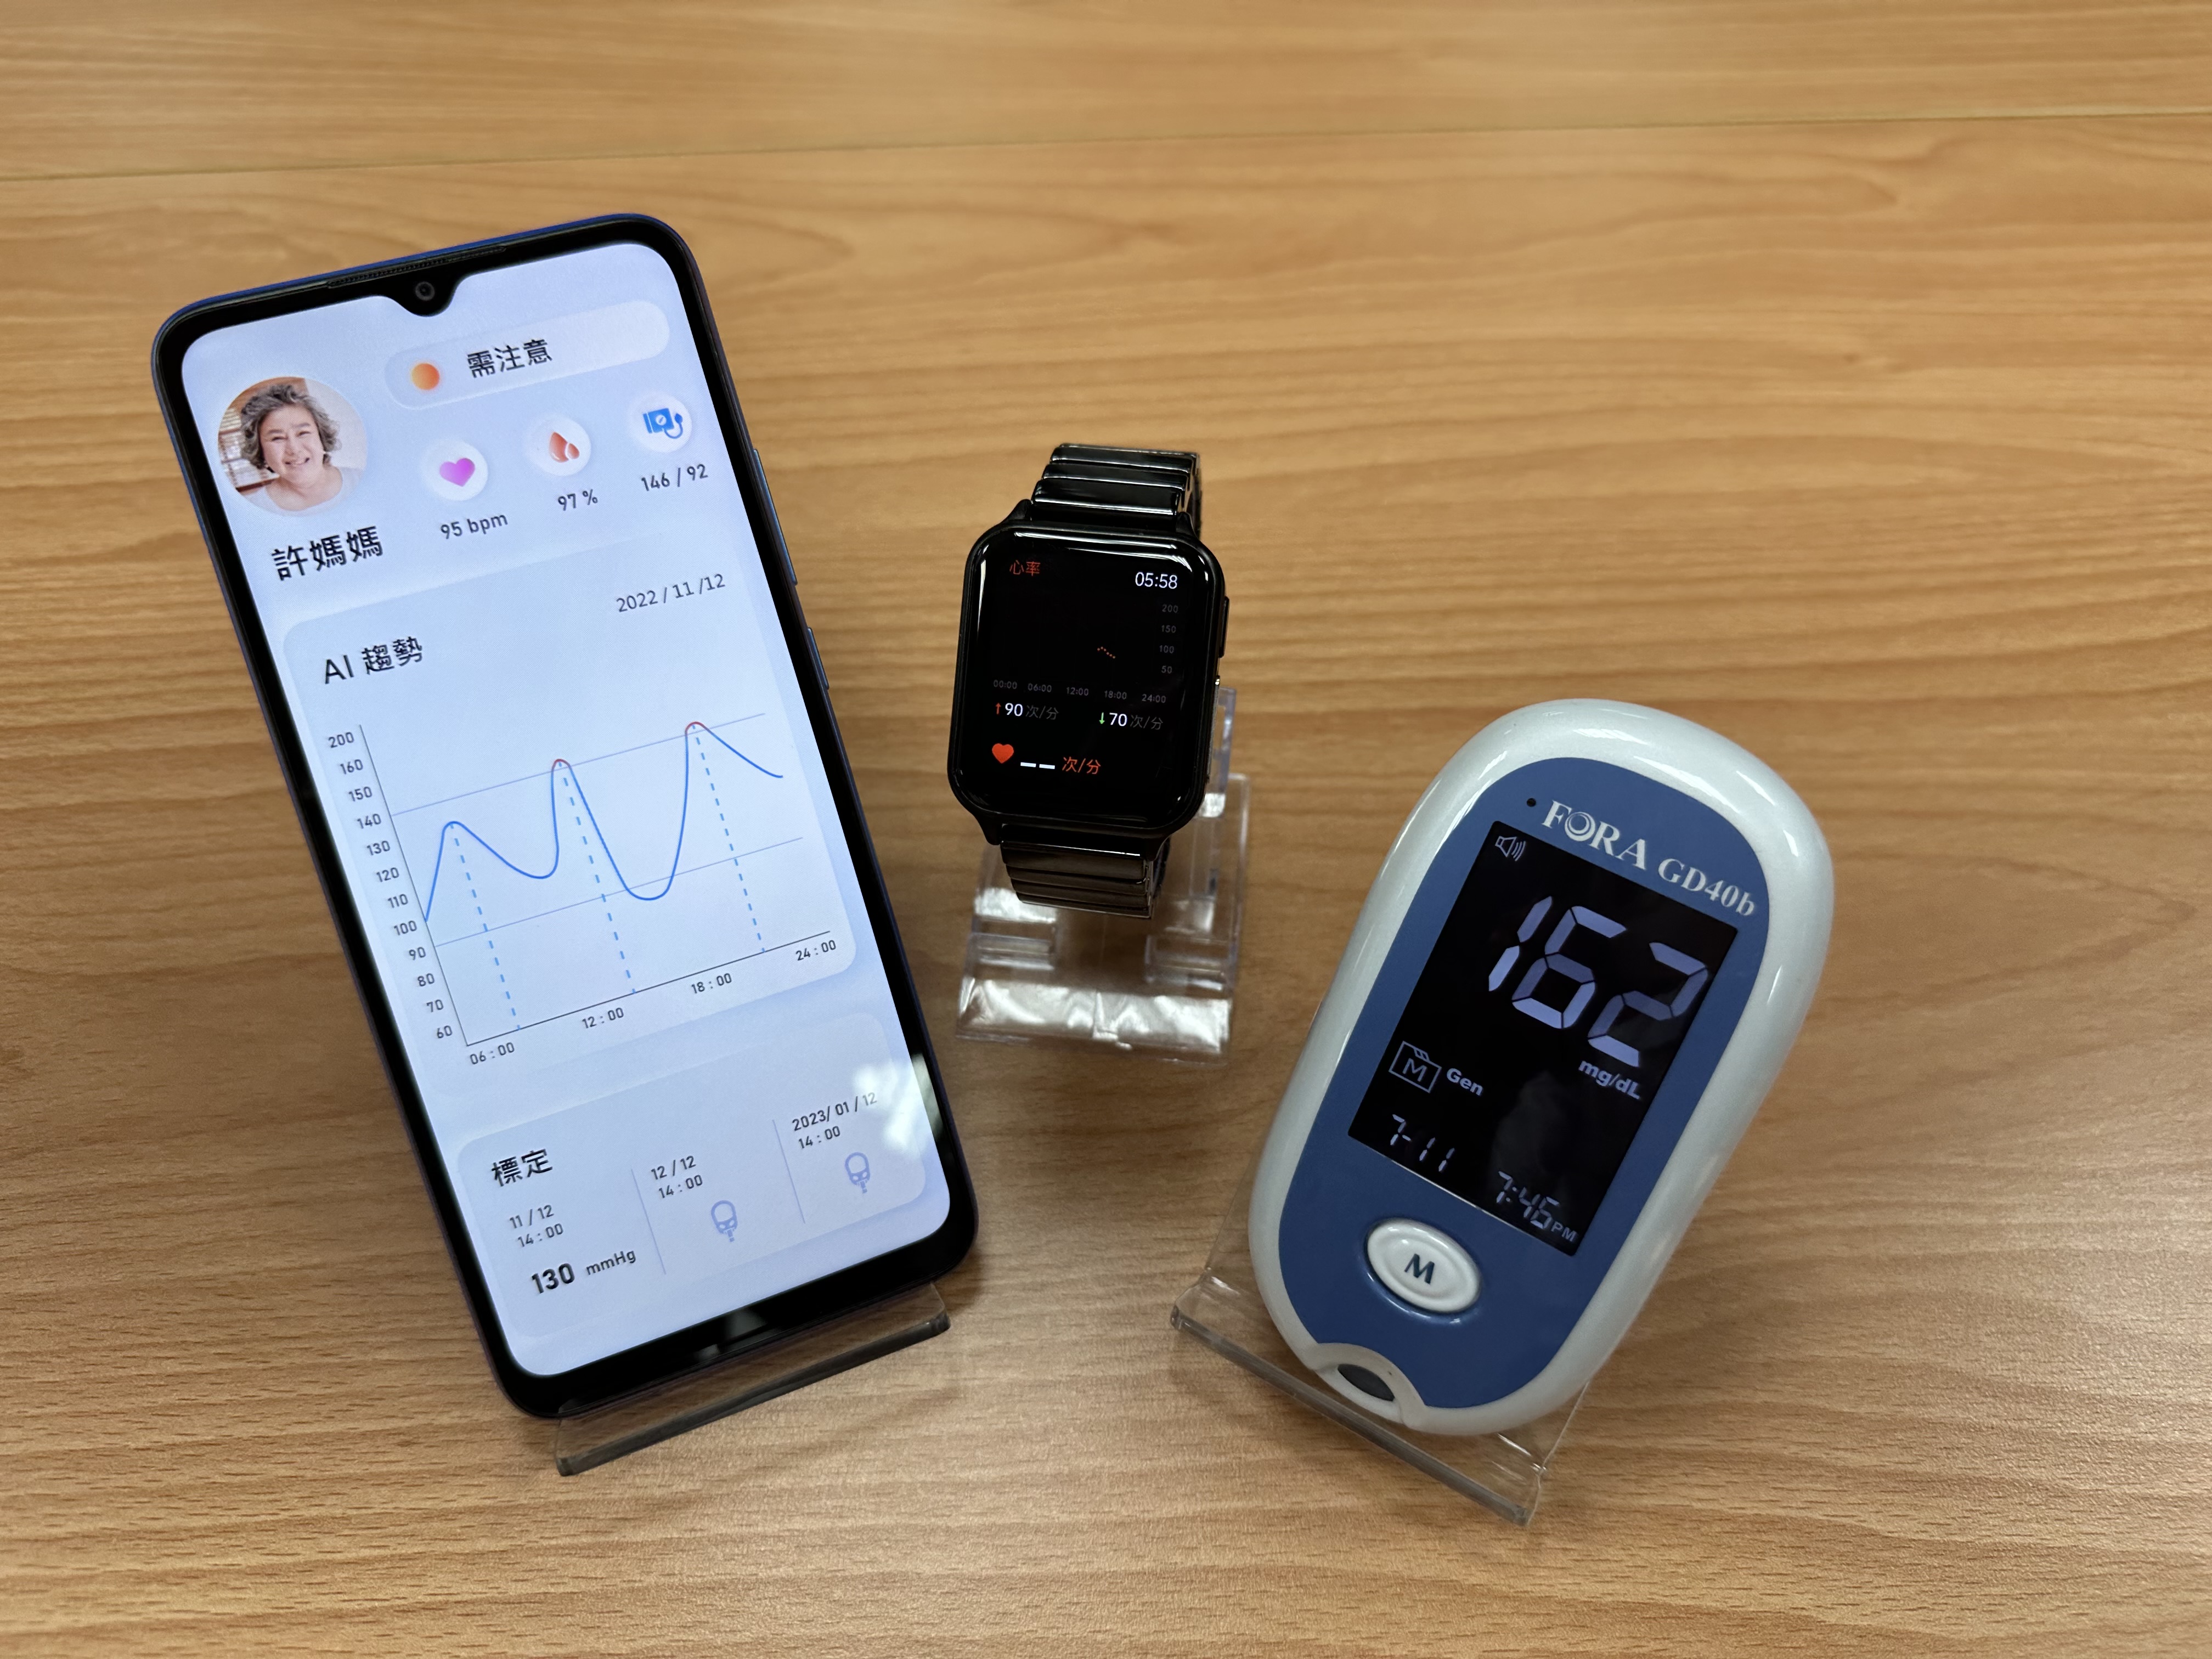 非侵入式血糖曲線預測多健康參數AI學習智慧手錶與服務系統